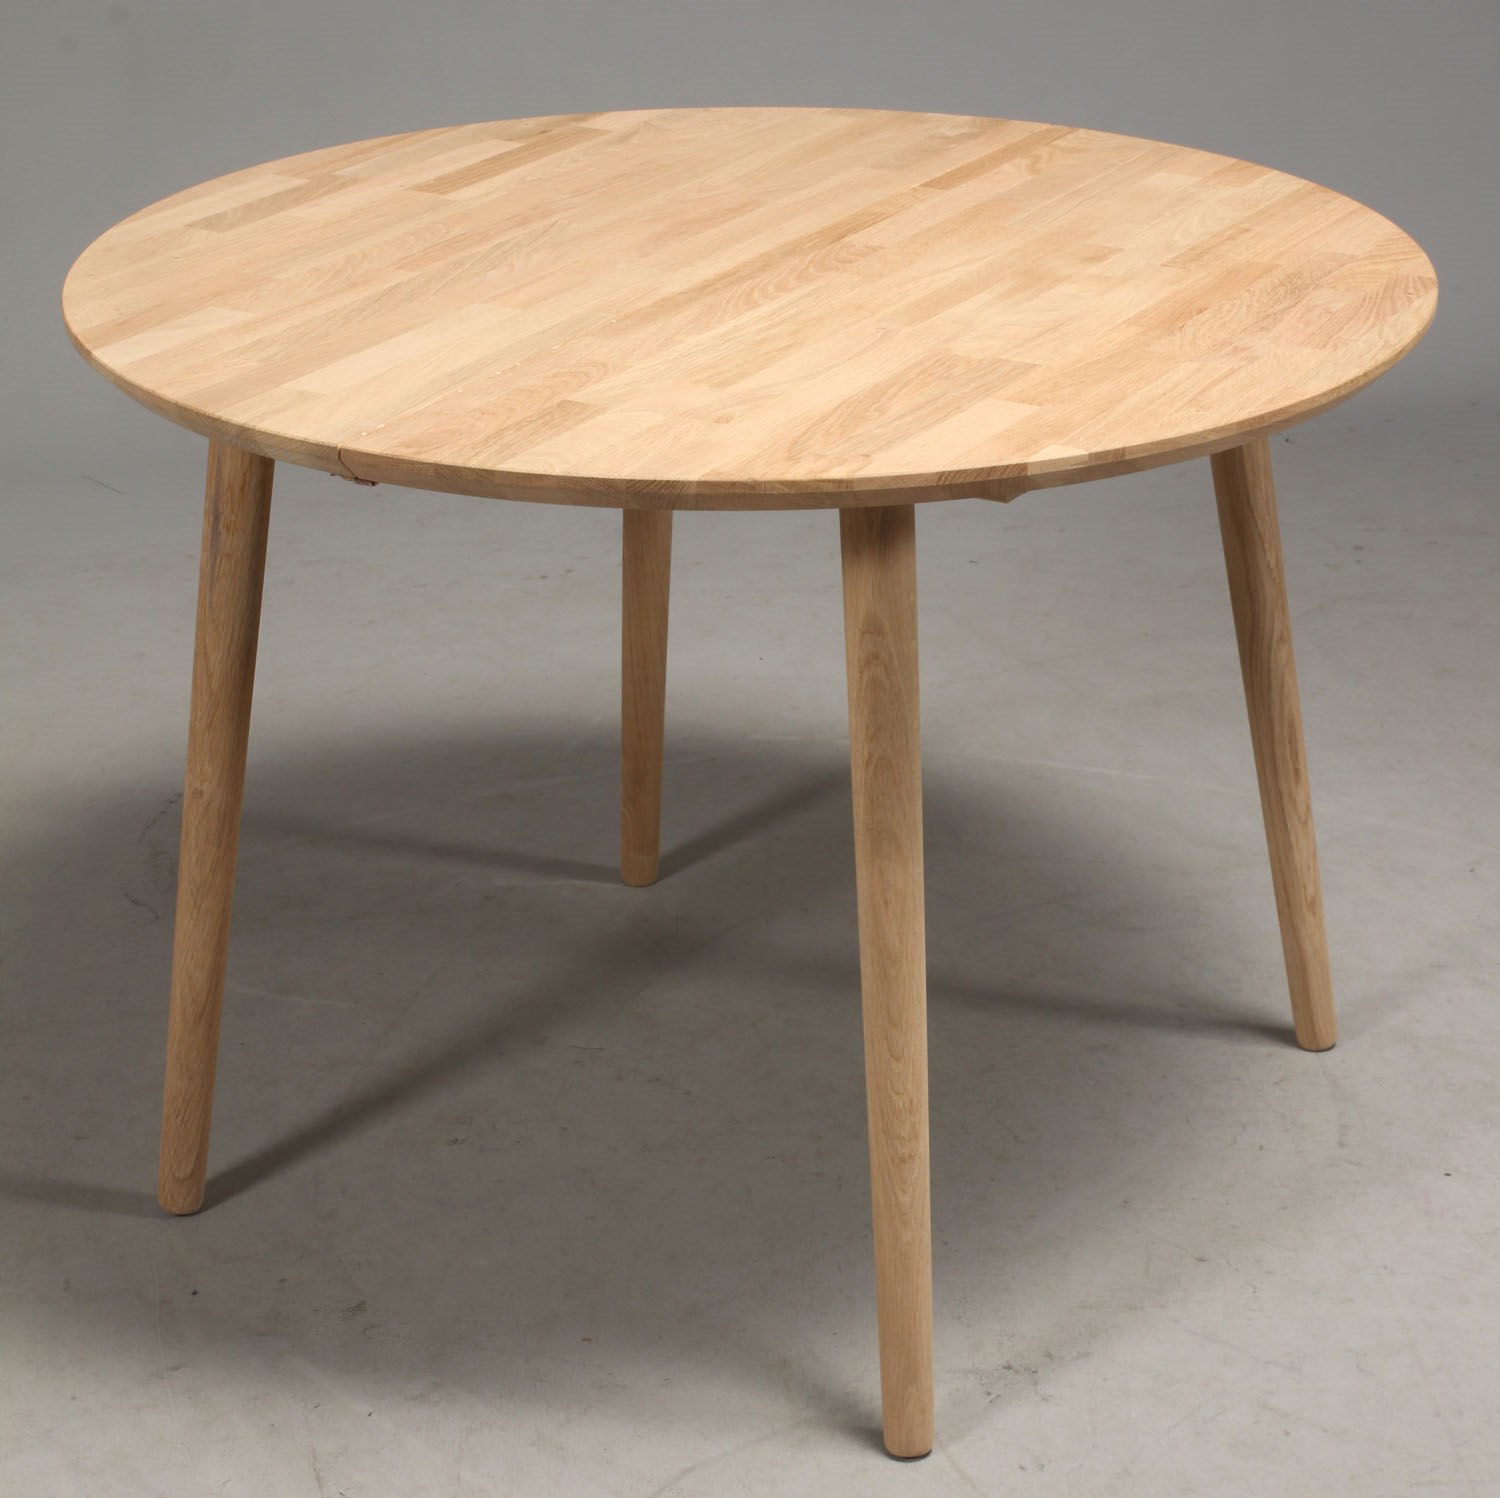 Spisebord incl. 1 tillægsplade, massiv eg, ø 120 cm - massiv træ - FURBO Aps